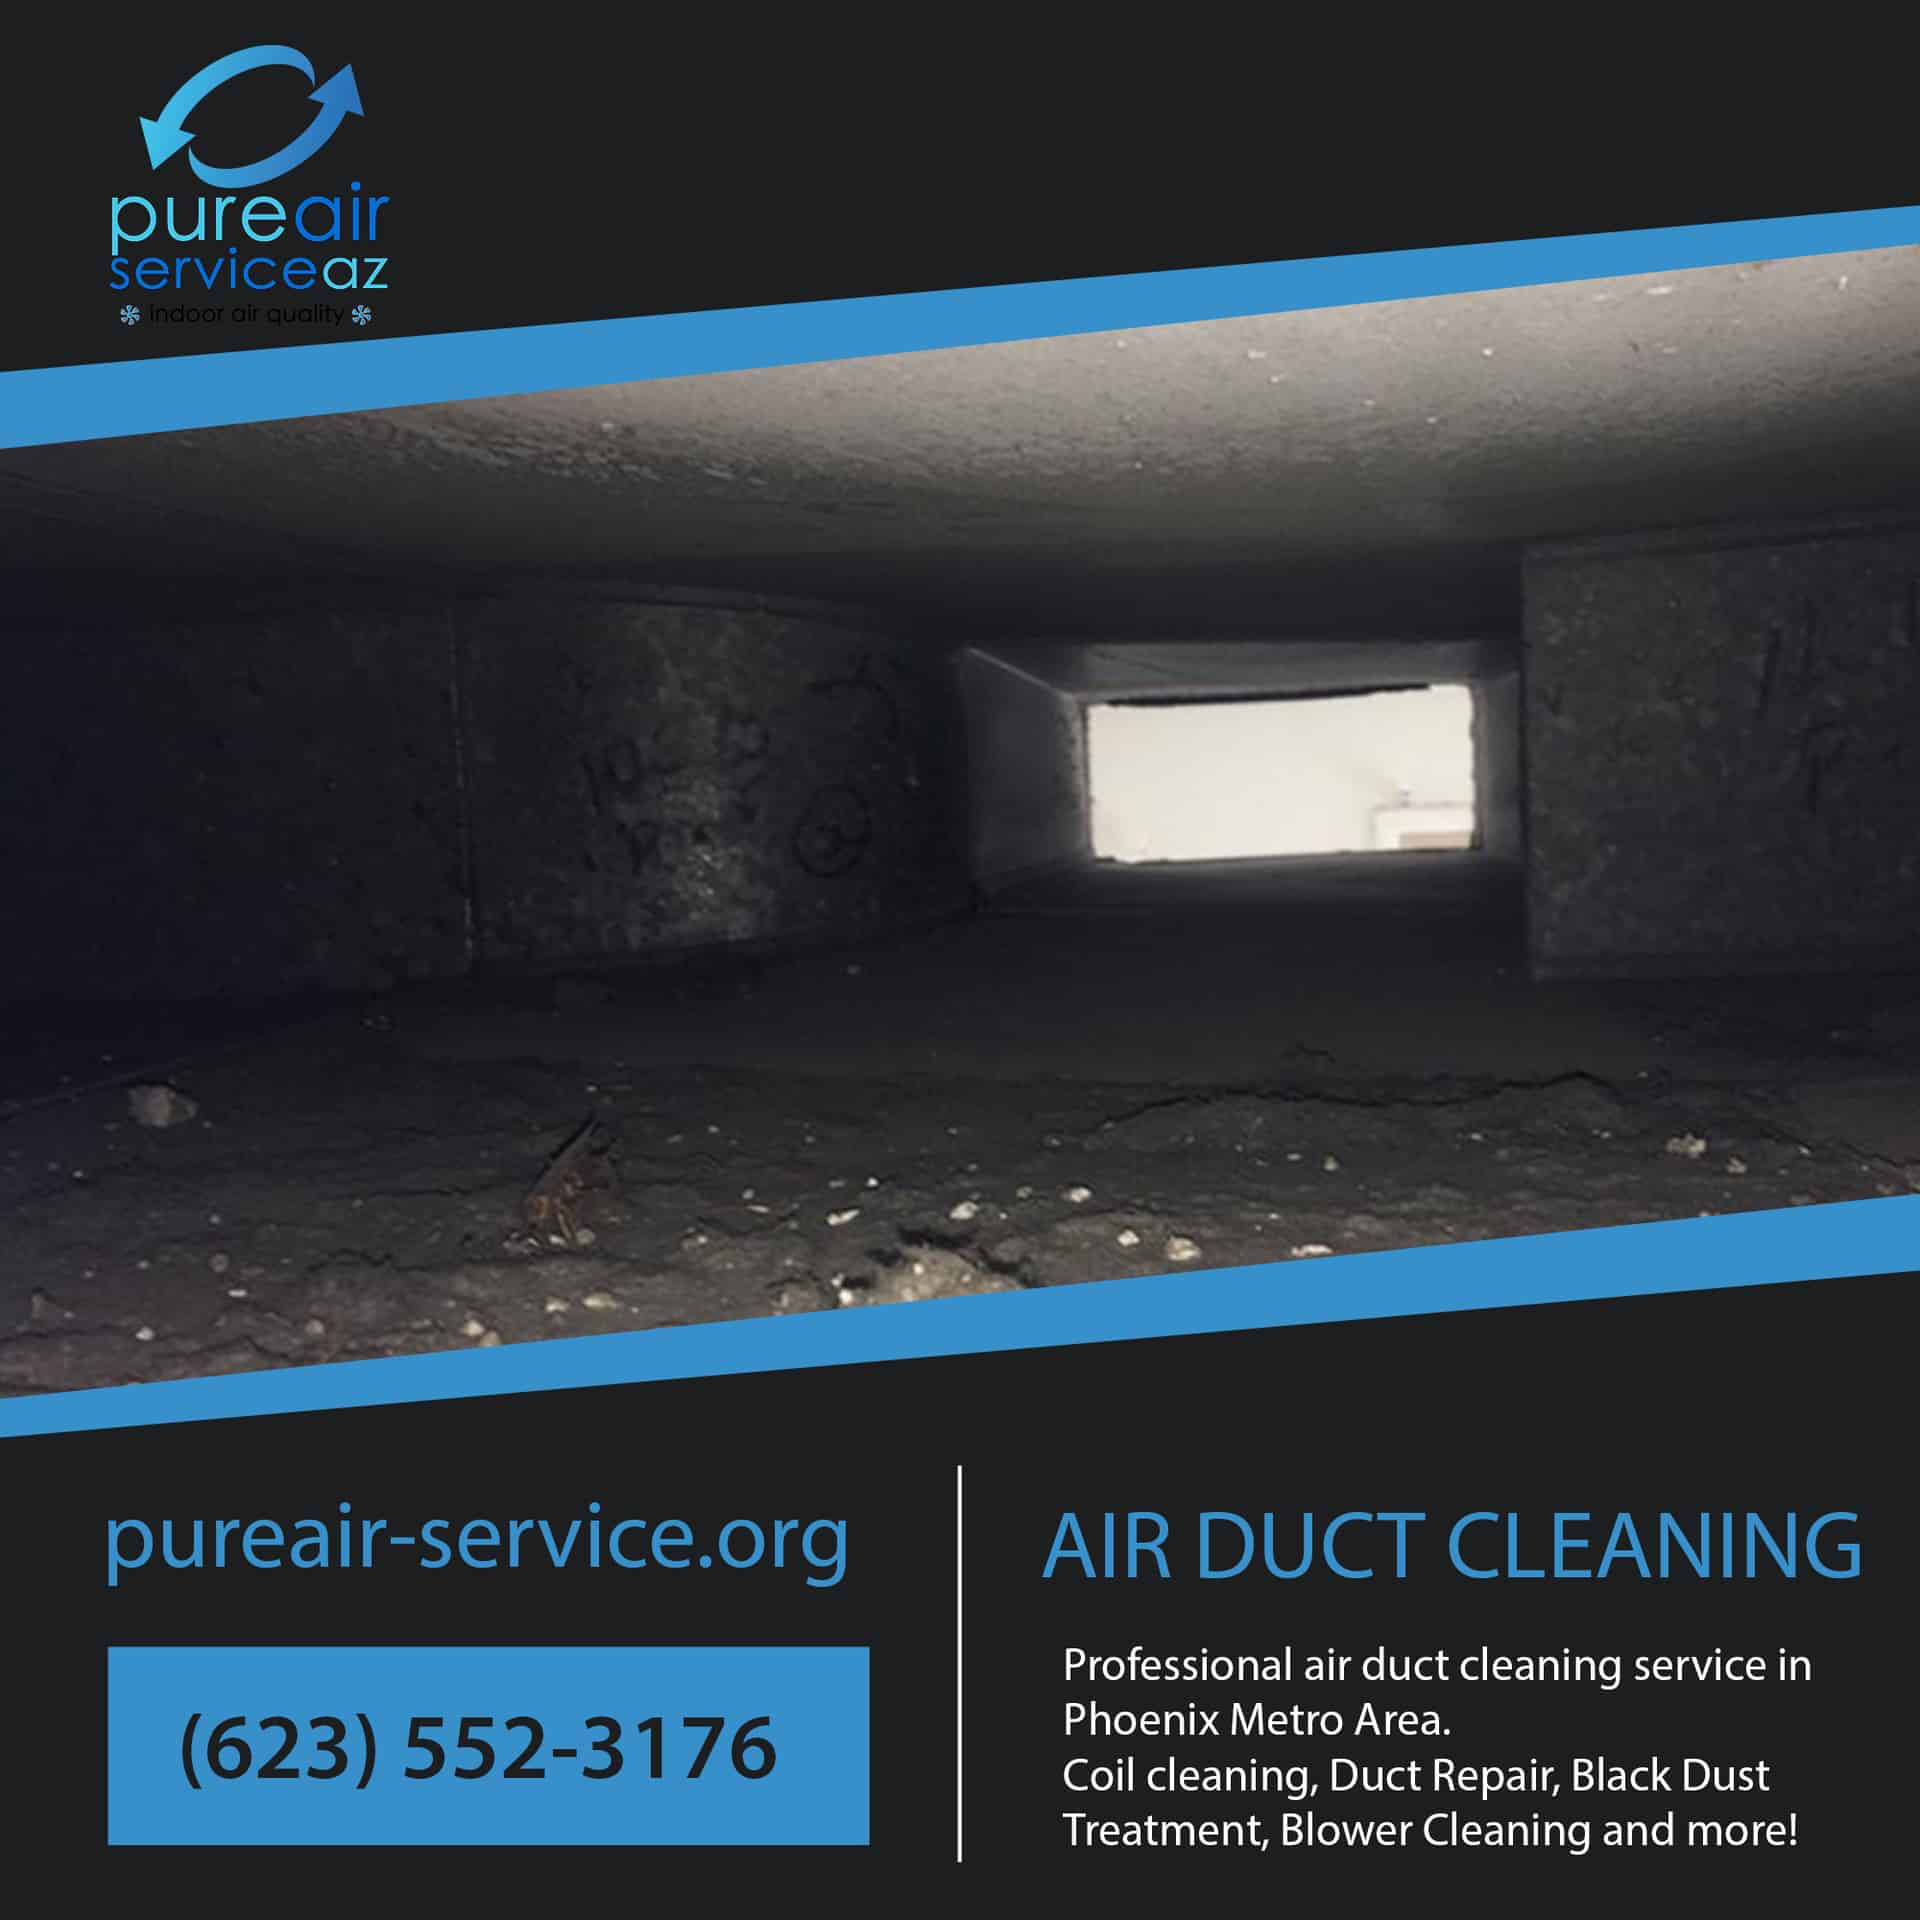 Air Duct Cleaning near me | Pure Air Service AZ